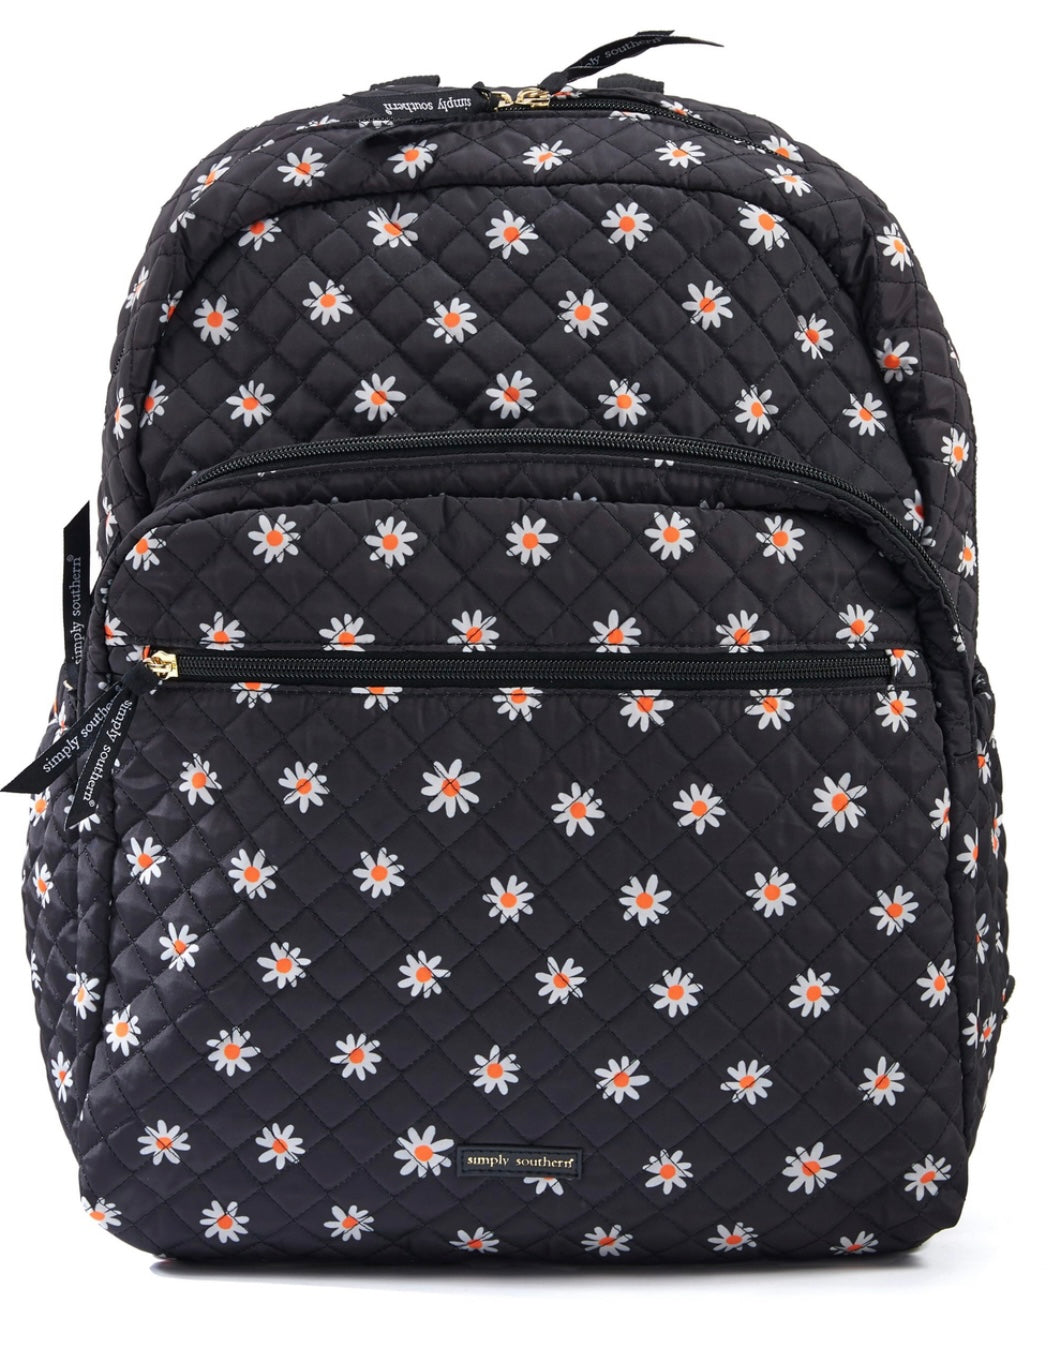 SS - Daisy Backpack